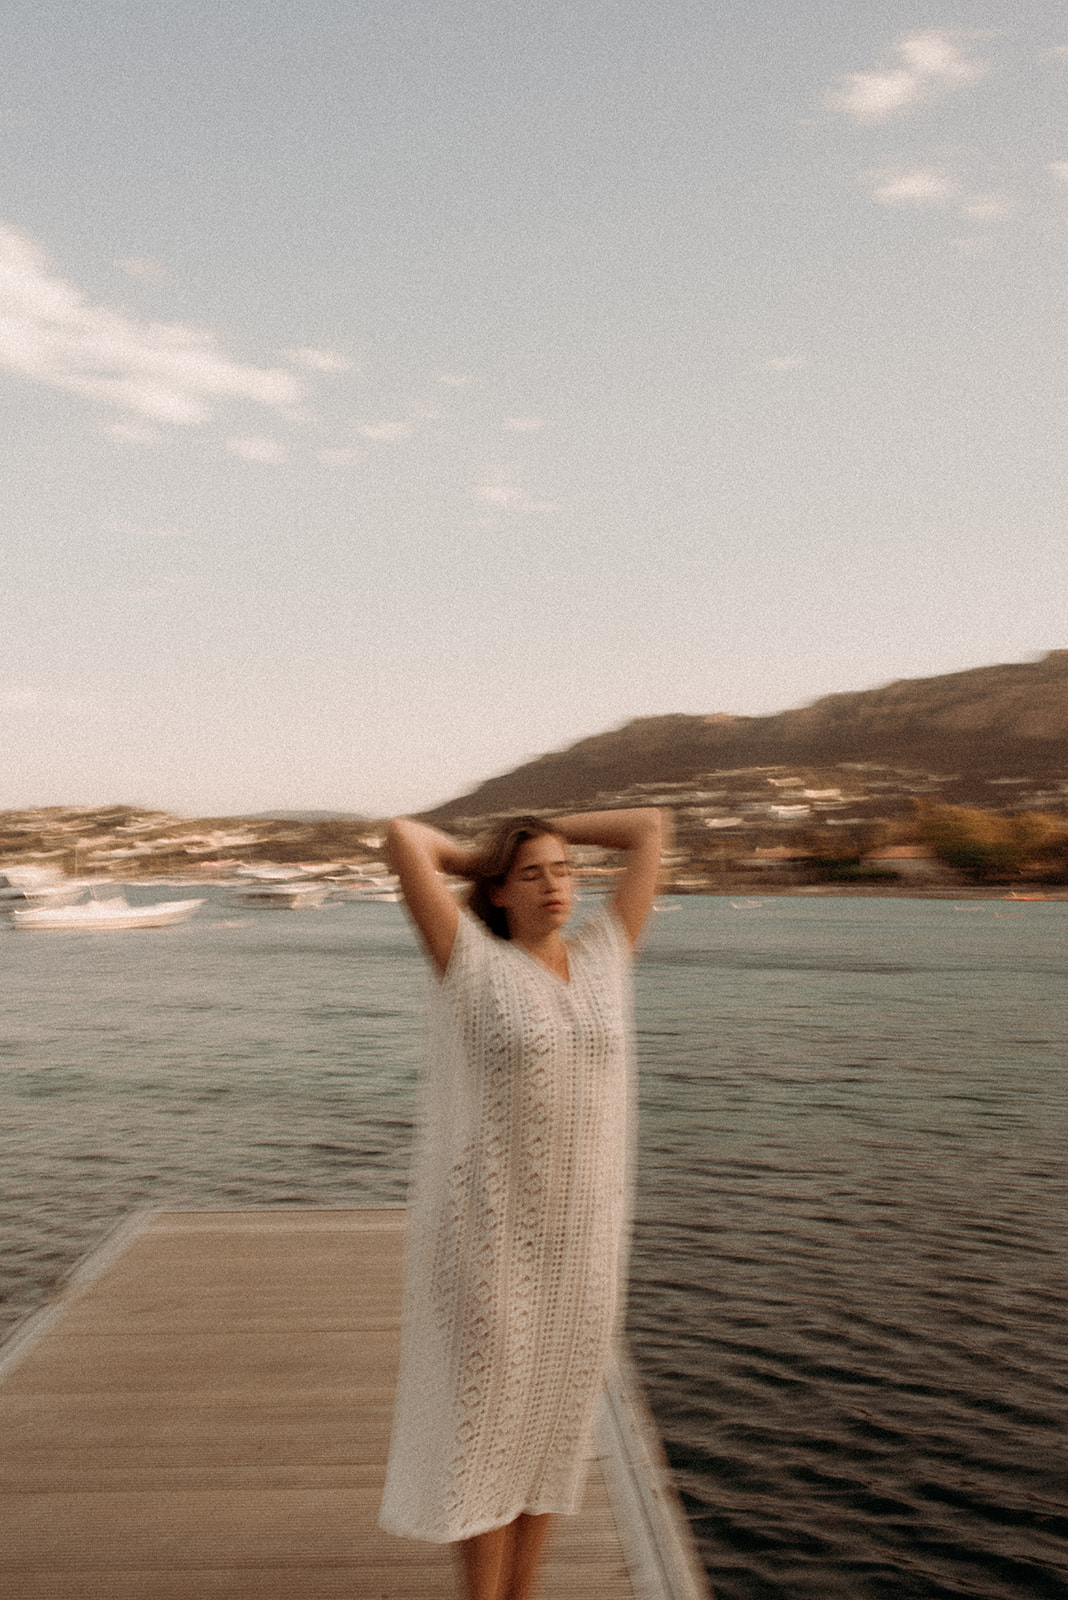 Un shooting photo portrait de femme, en bord de mer. Simplicité, douceur, introspection et photo thérapie.